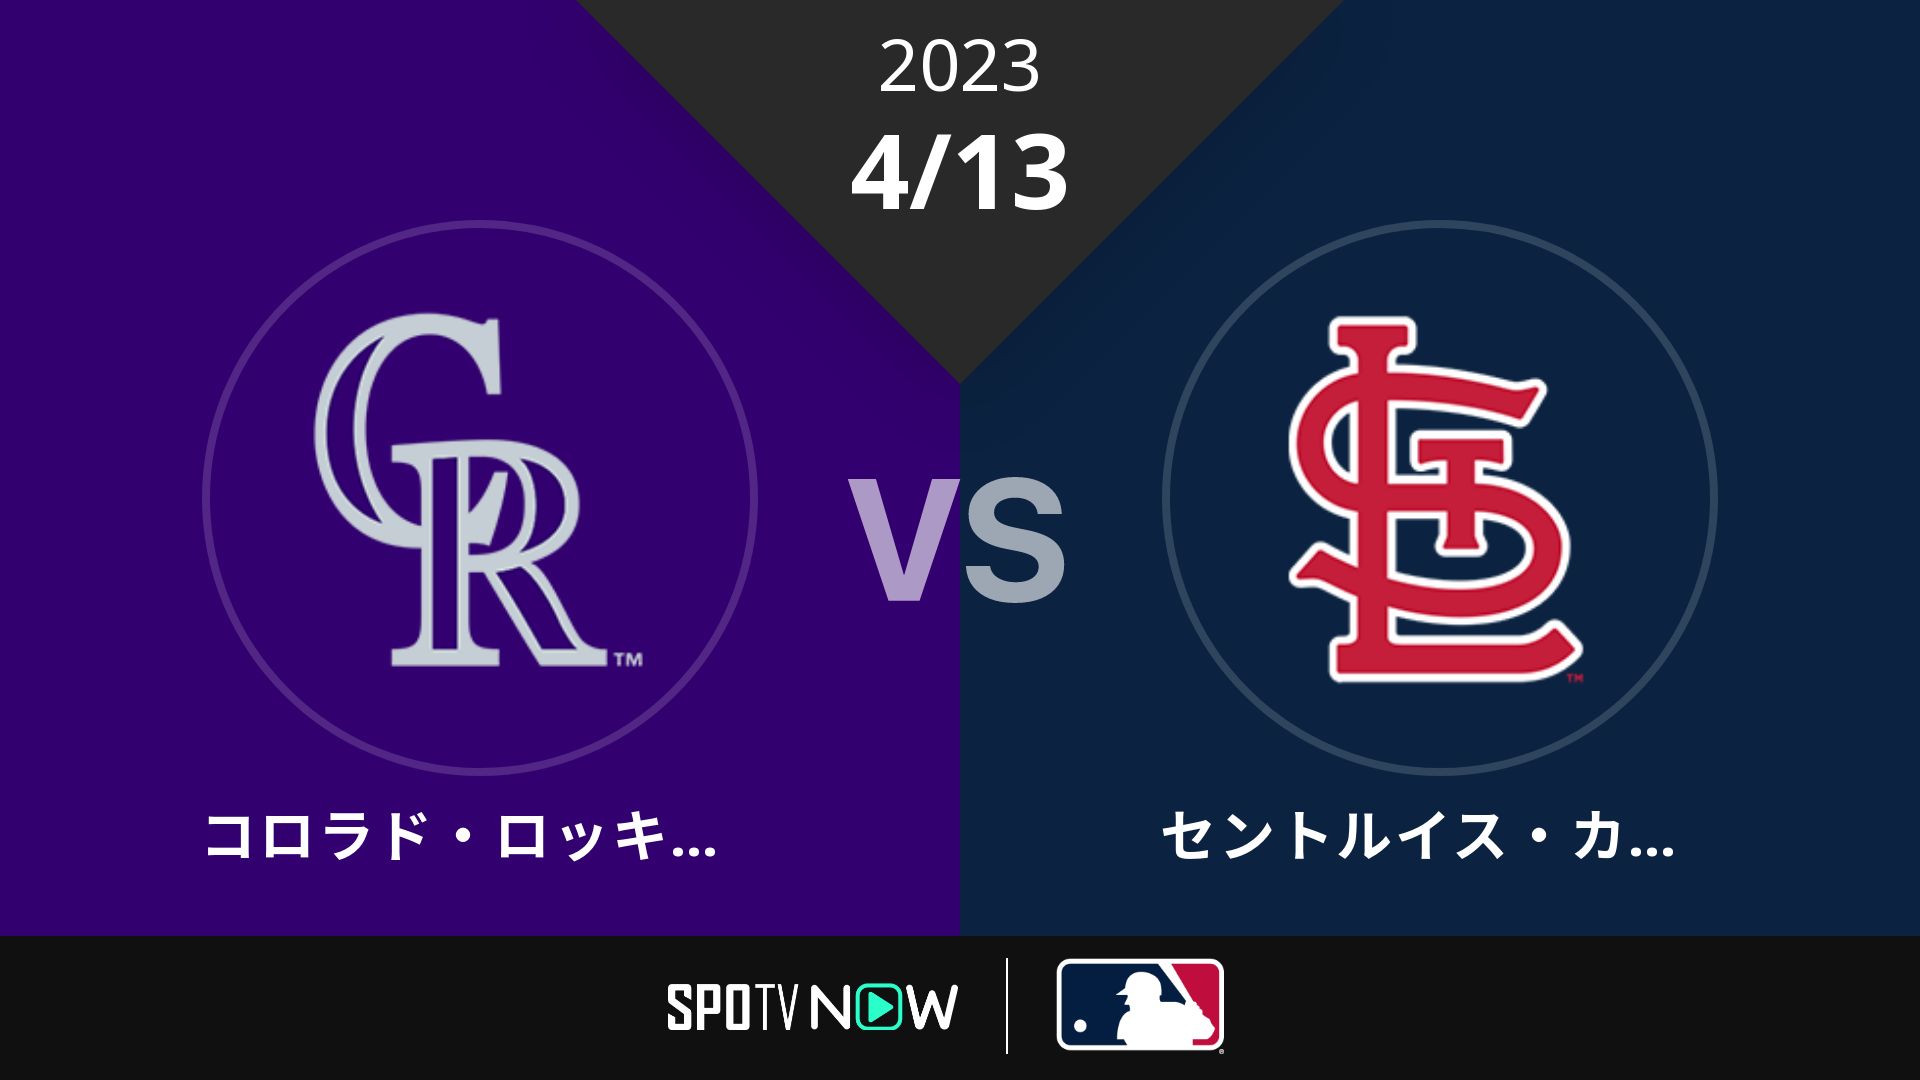 2023/4/13 ロッキーズ vs カージナルス [MLB]